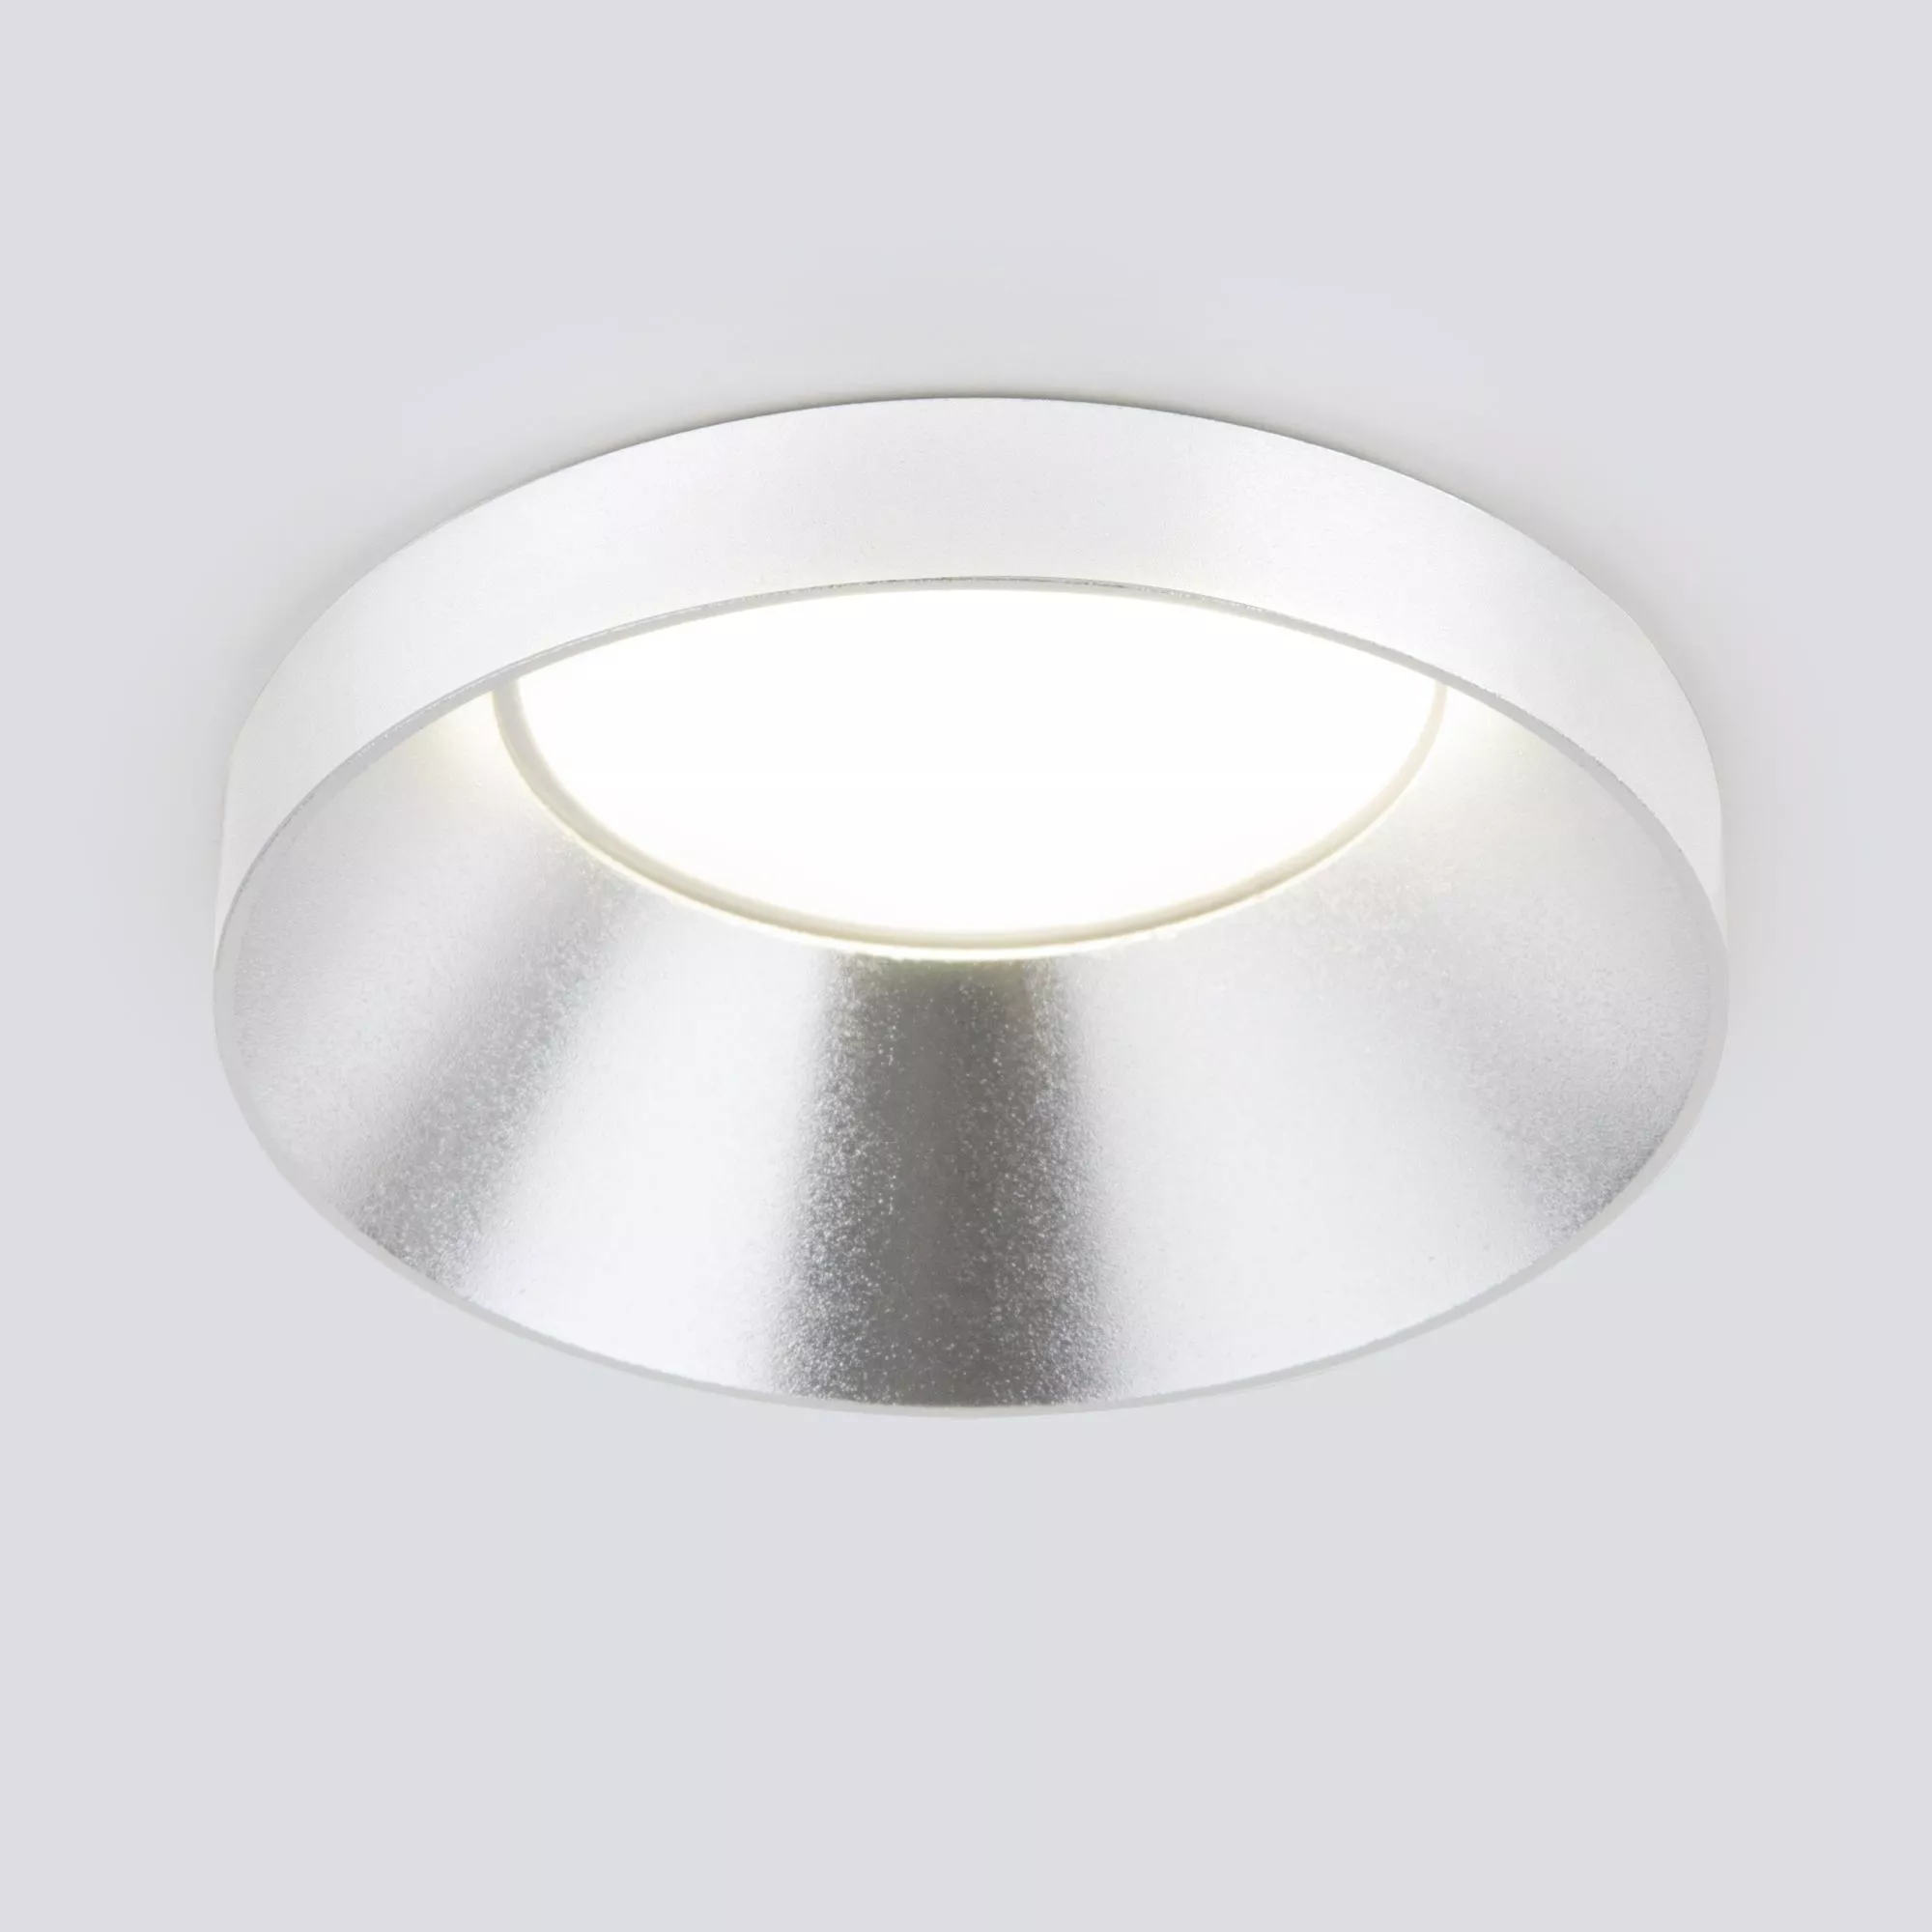 Точечный встраиваемый светильник Elektrostandard Disc 111 MR16 Серебро